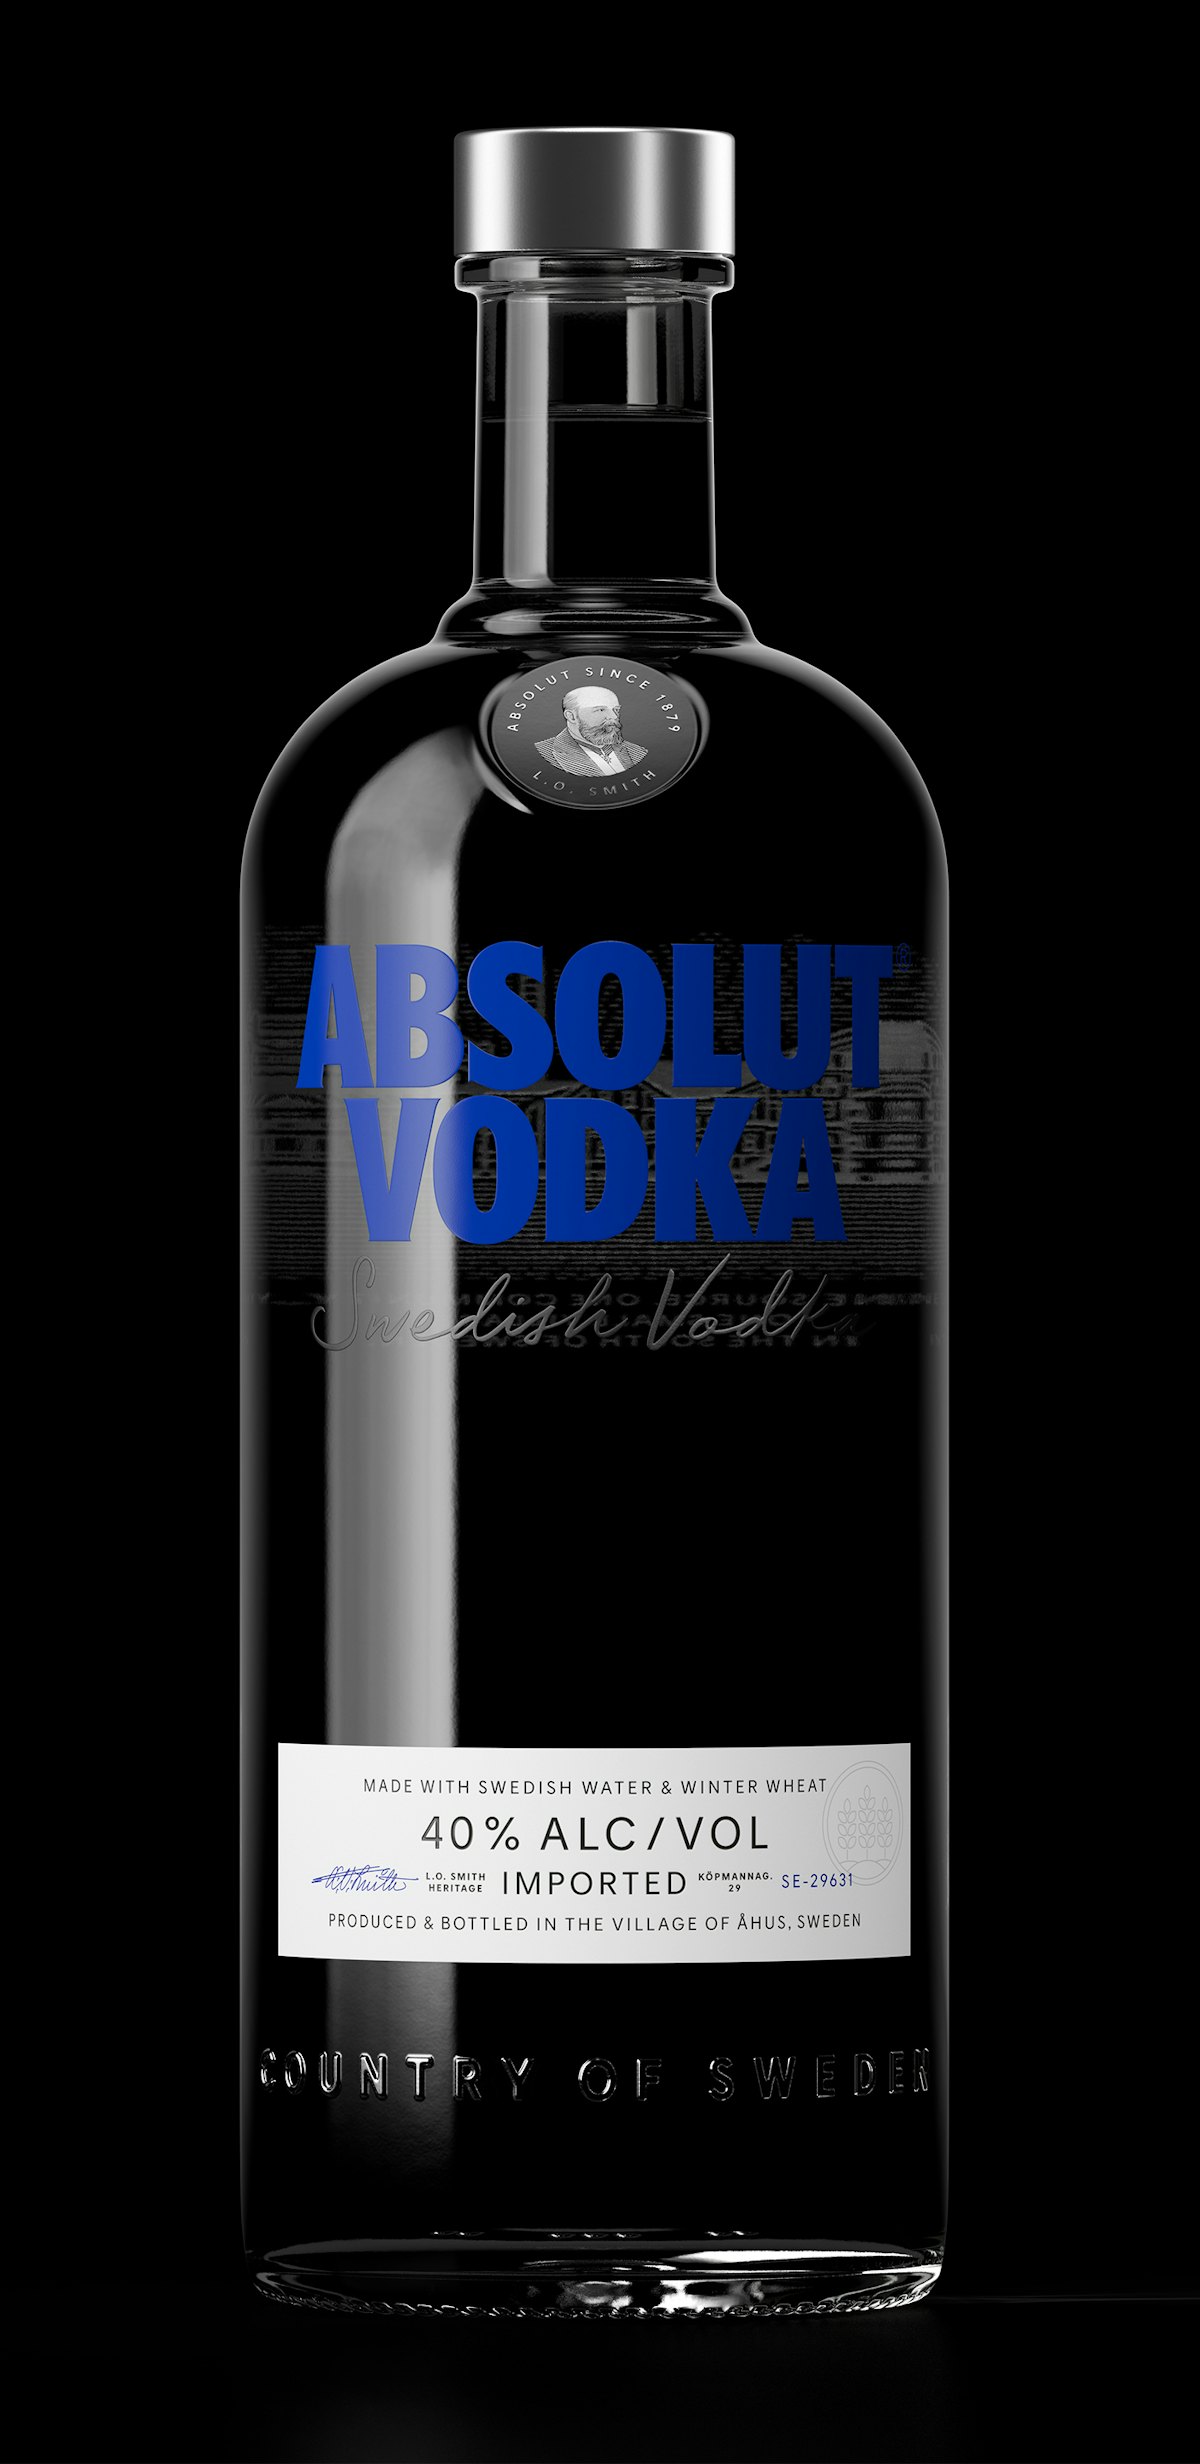 Absolut Vodka Bottle Gets Redesign